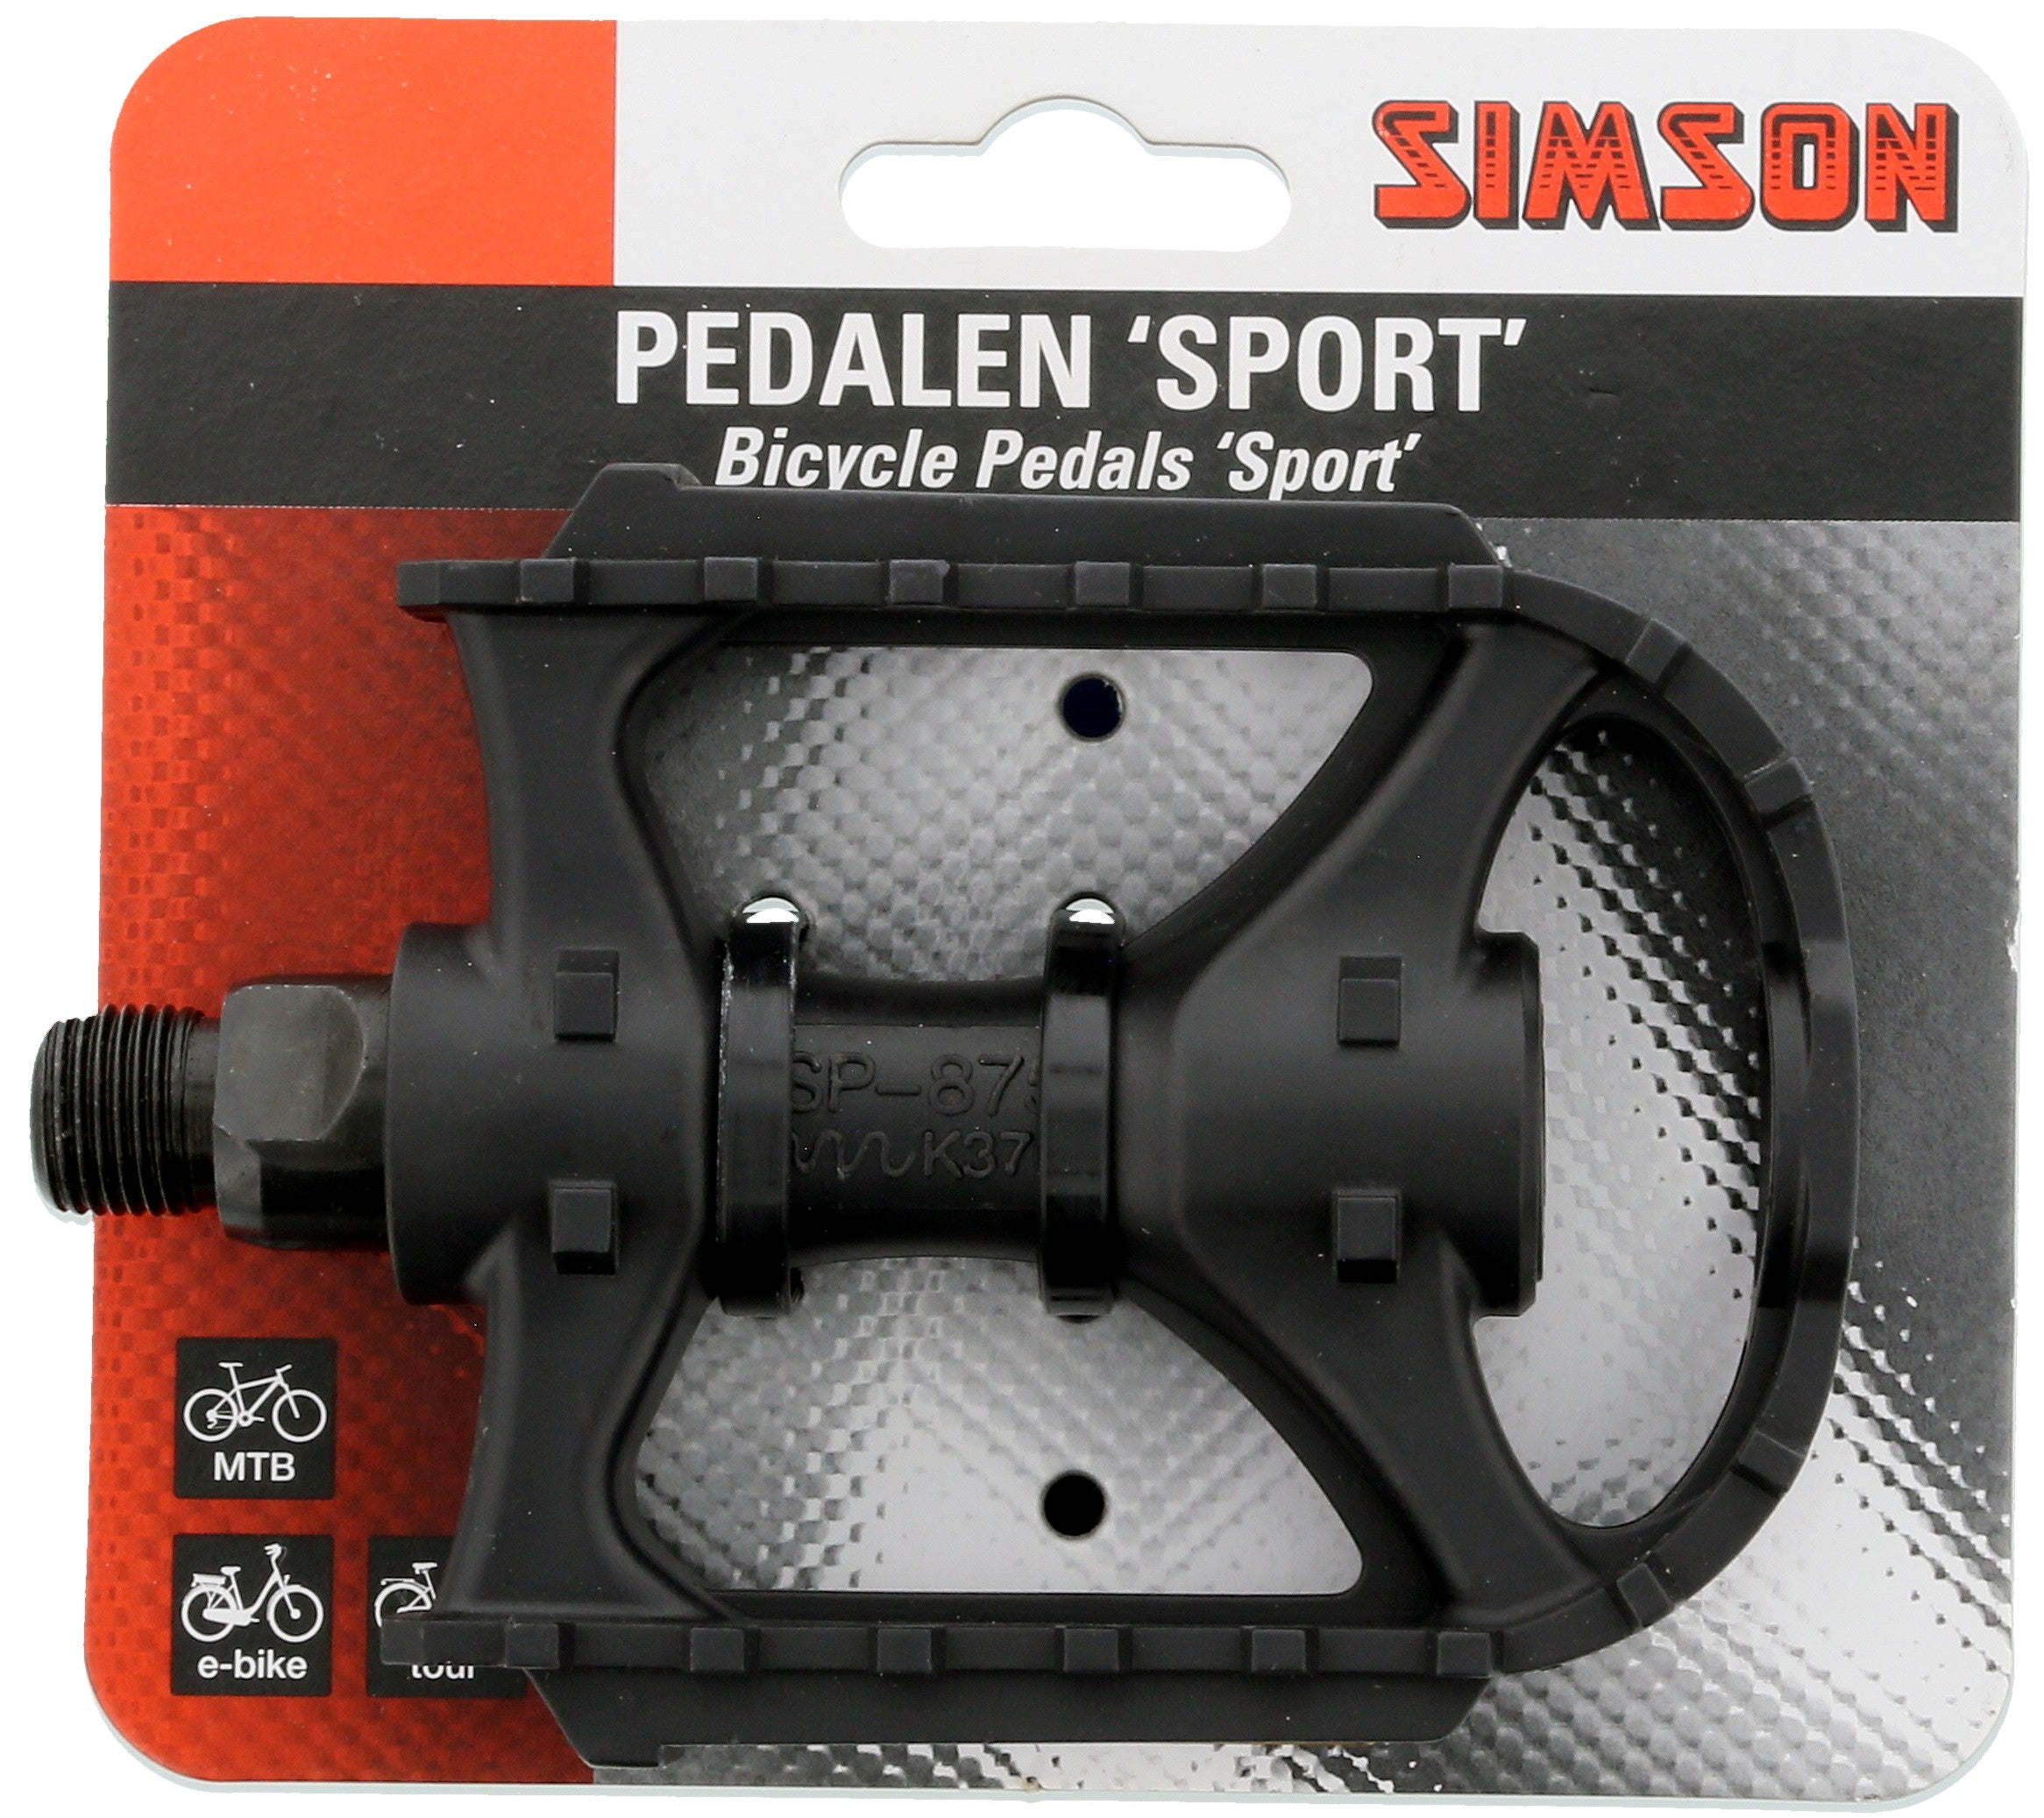 Se Simson Pedalen 'Sport' hos Cykelsadlen.DK